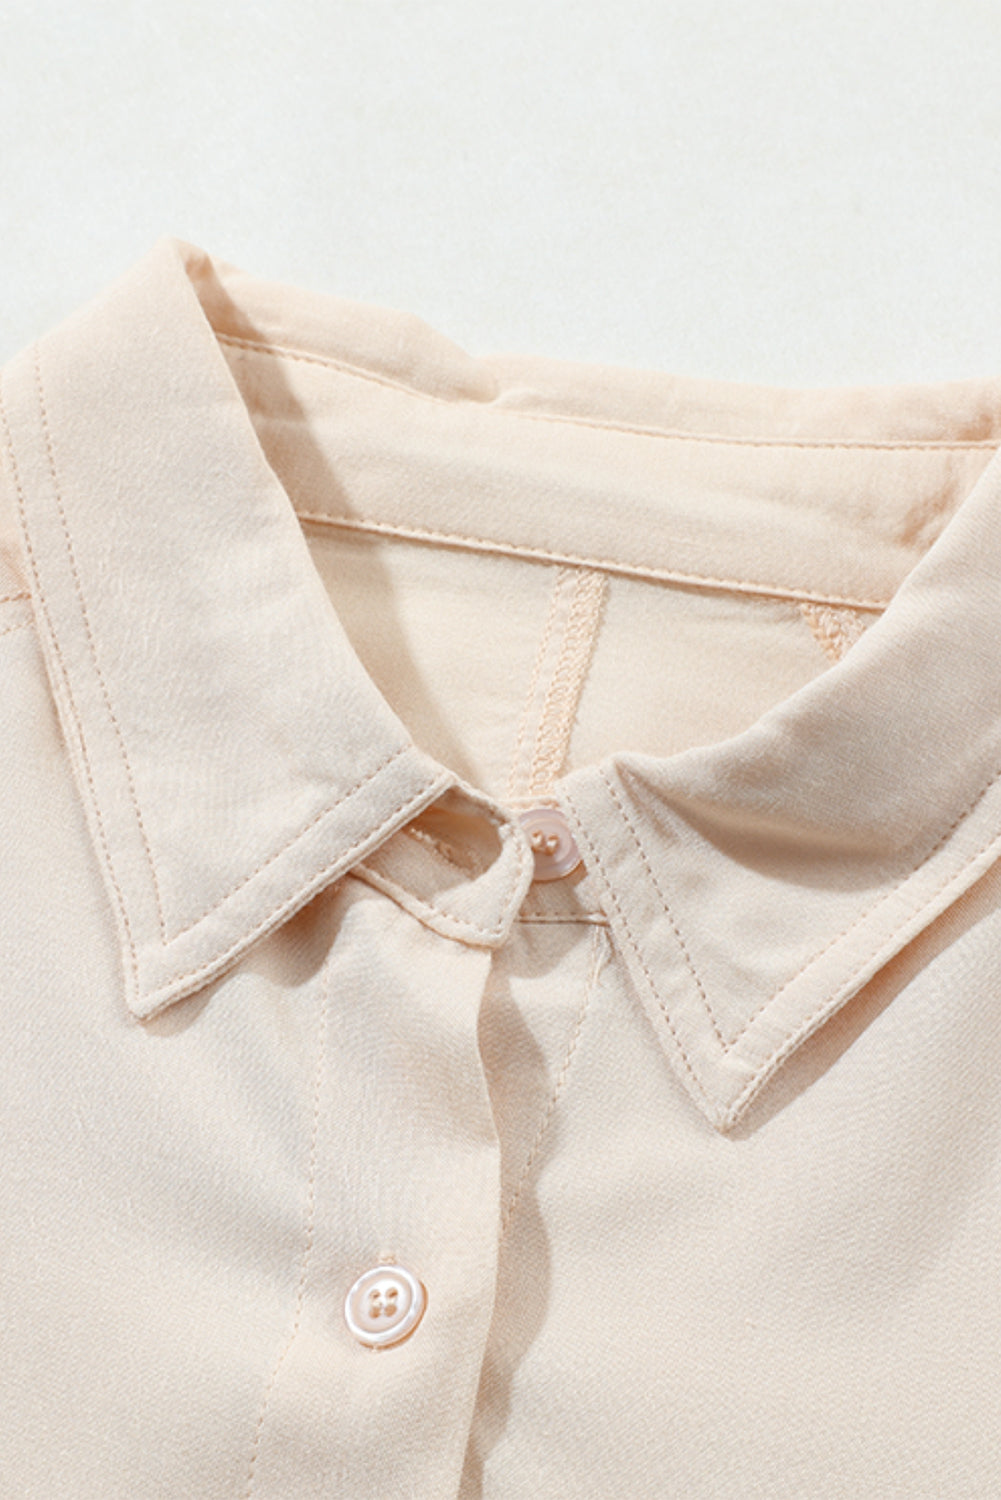 Camicia ampia e bassa con tasca sul petto con bottoni in tinta unita albicocca